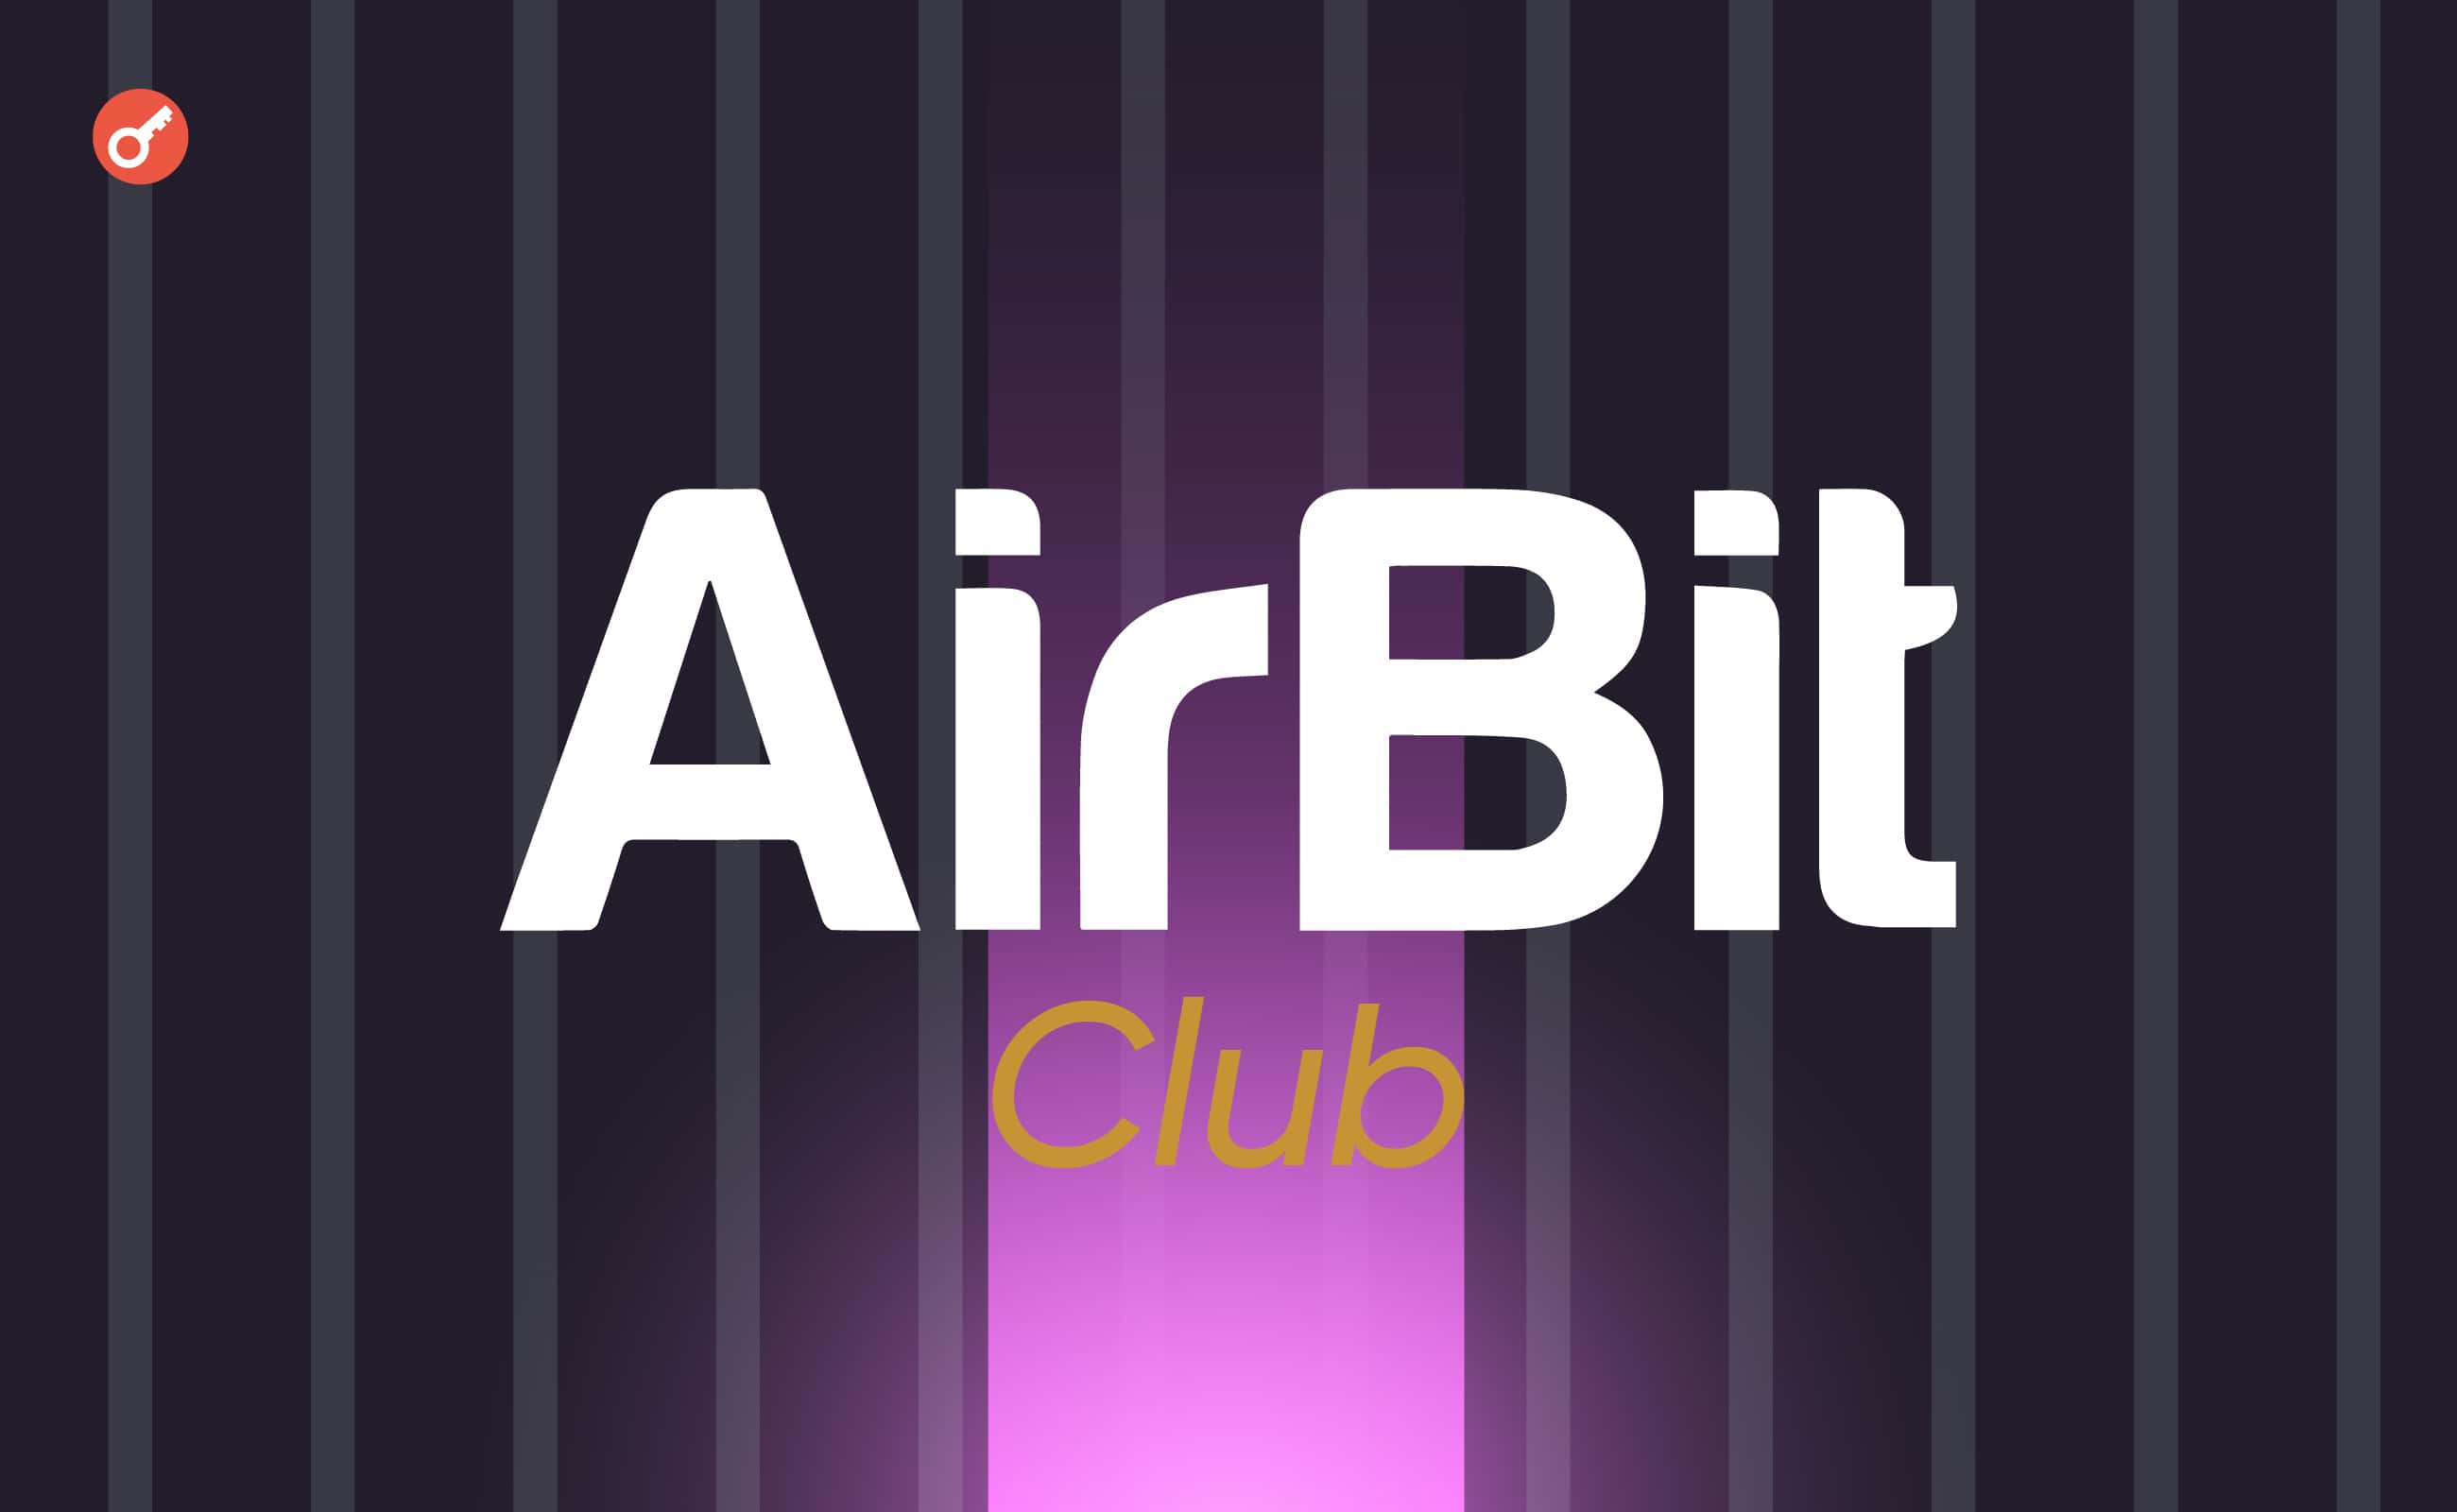 Співзасновника шахрайської схеми AirBit Club засудили до 12 років позбавлення волі. Головний колаж новини.